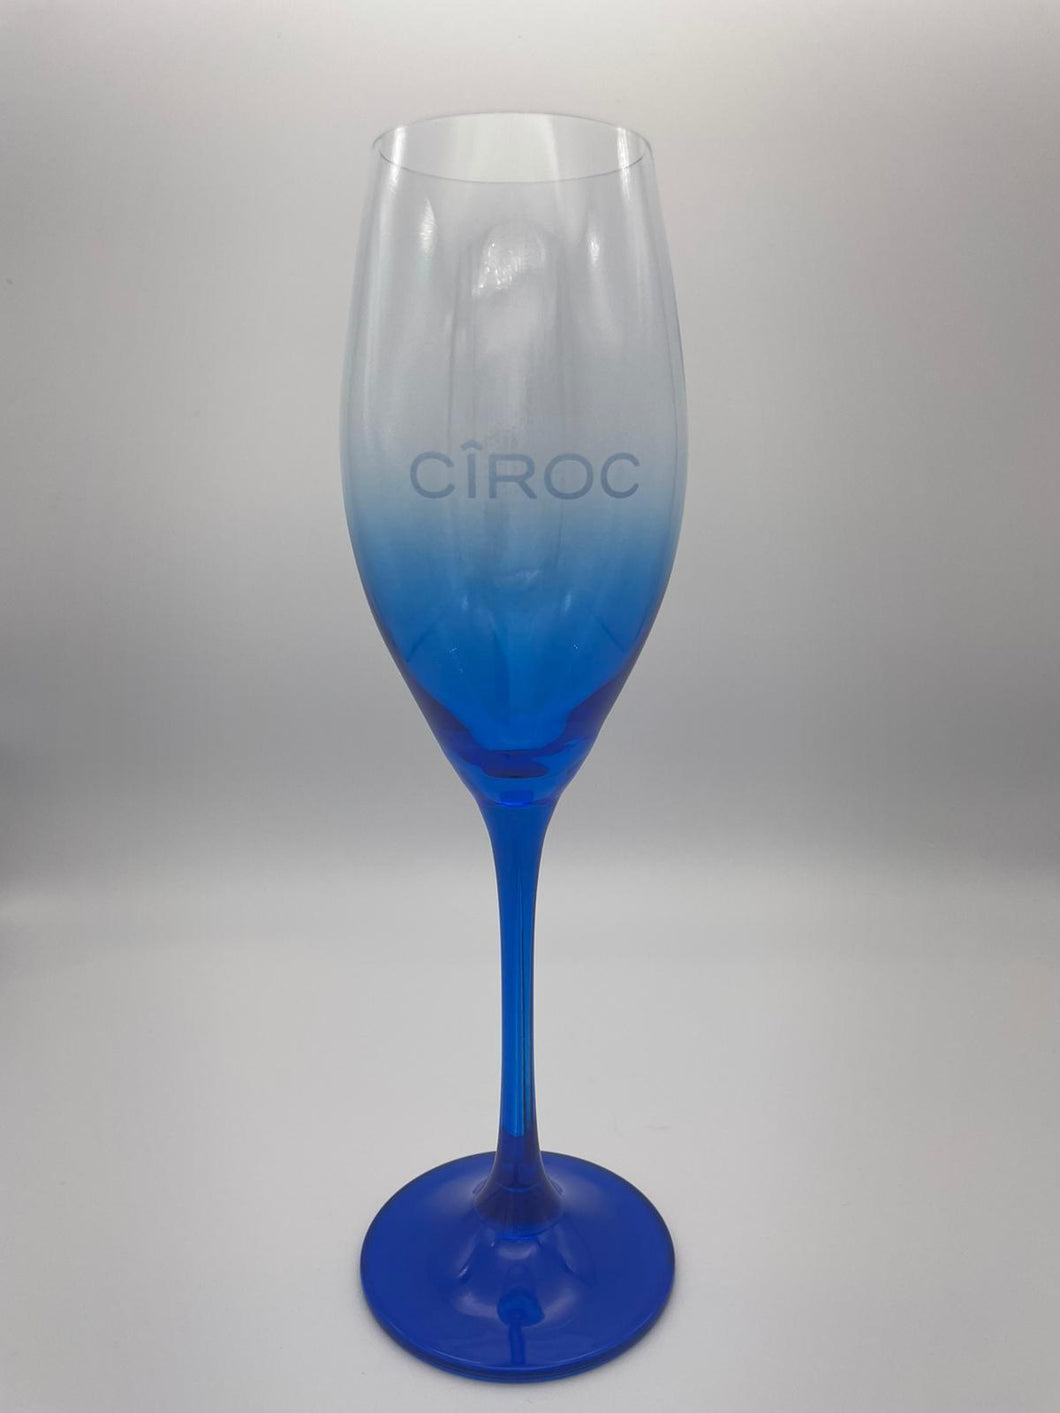 Ciroc vodka glass